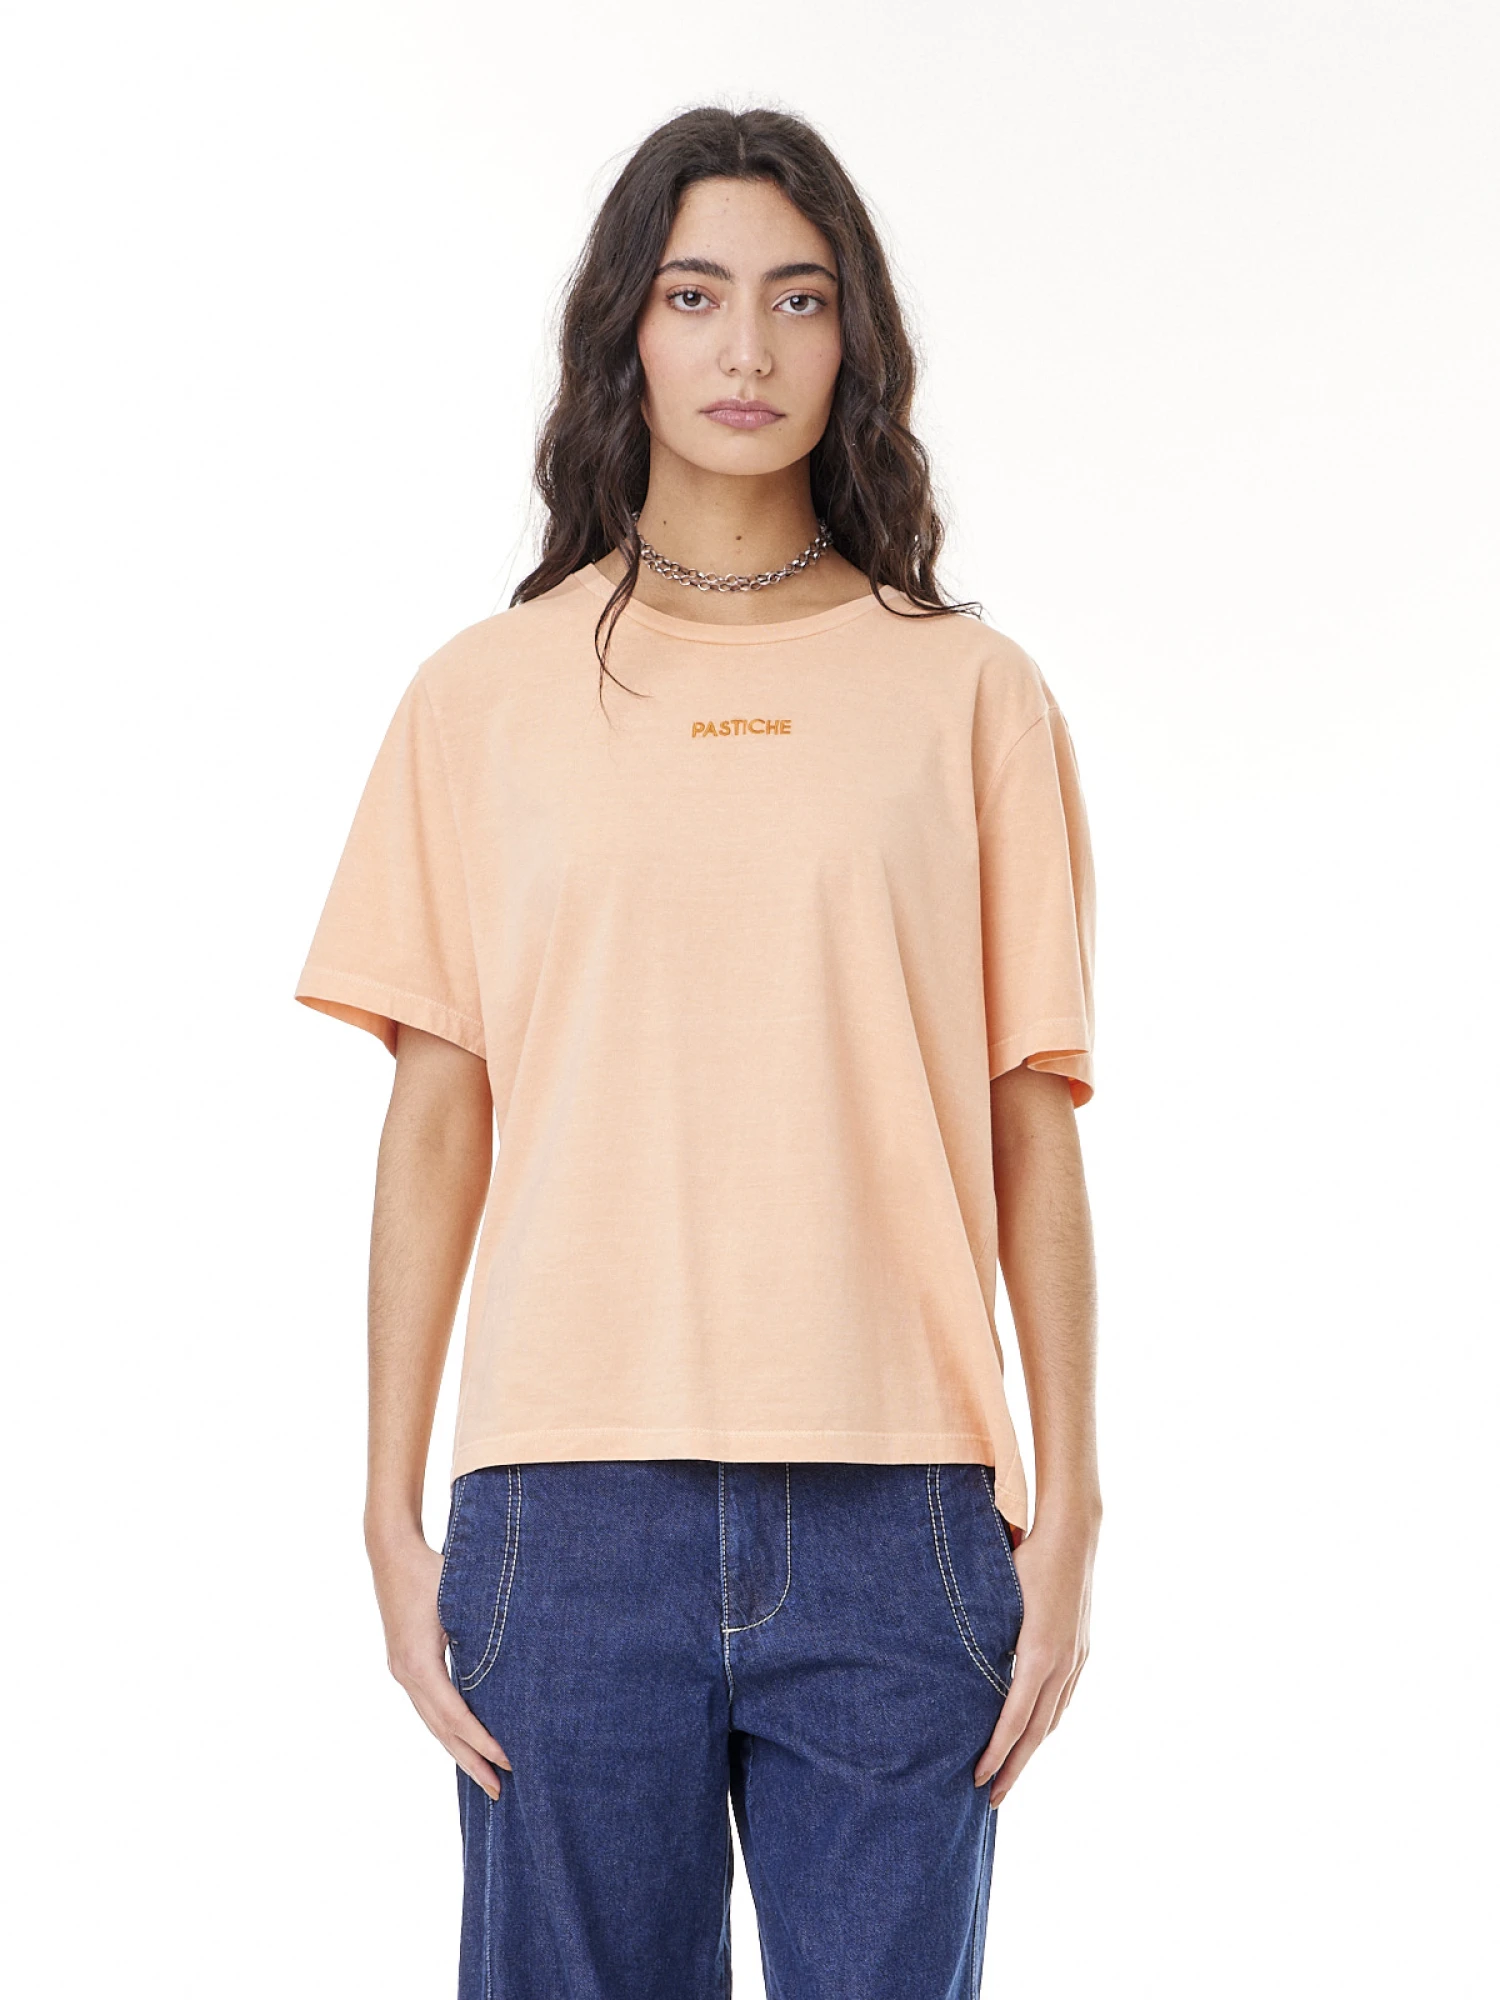 T-shirt Atenas naranja xs